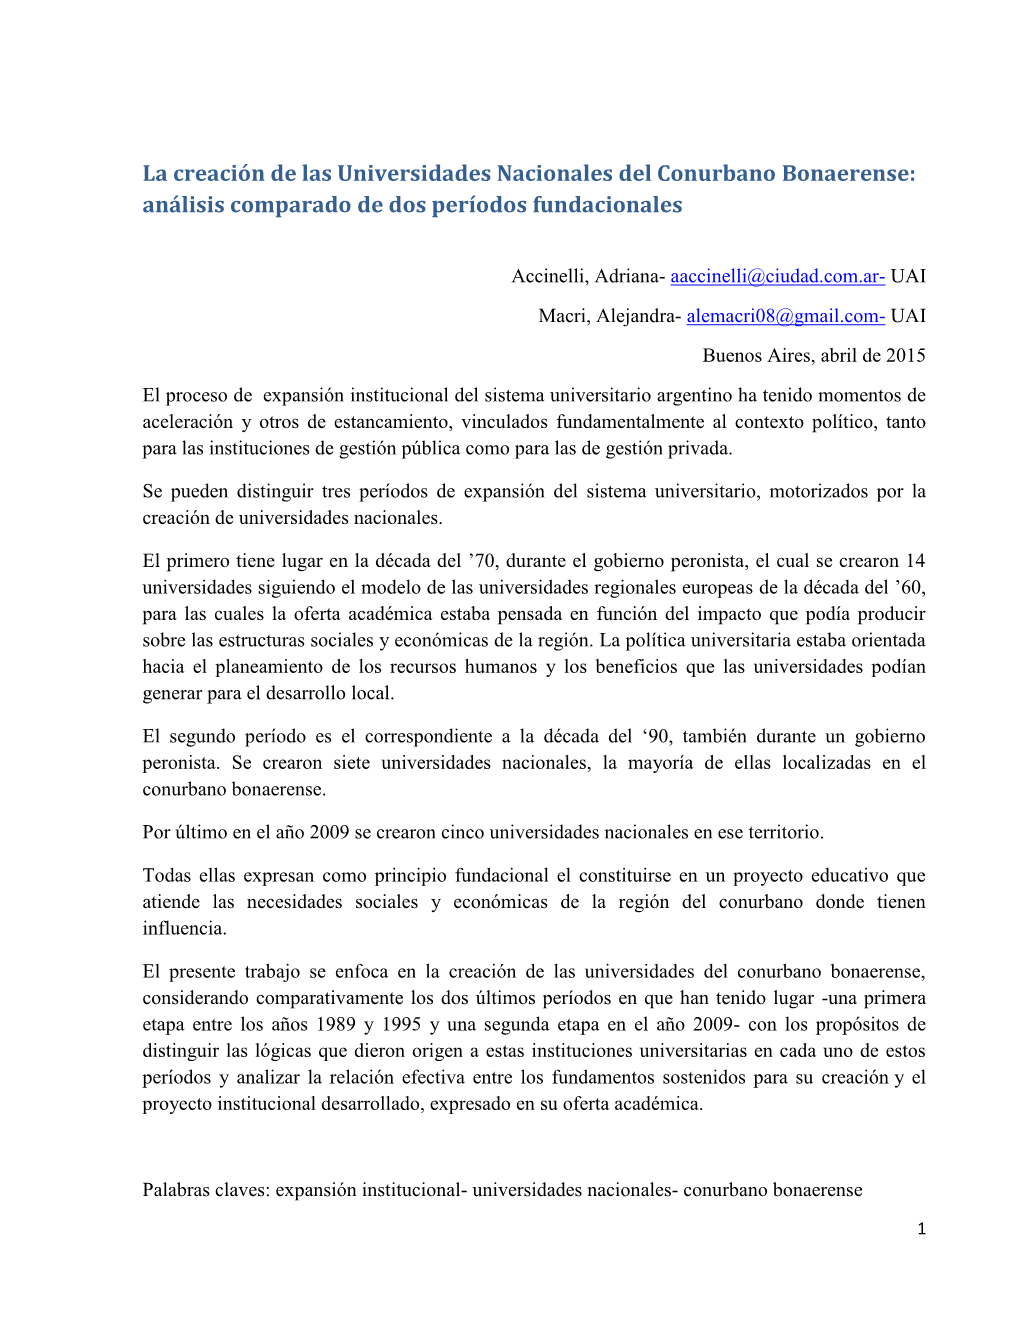 La Creación De Las Universidades Nacionales Del Conurbano Bonaerense: Análisis Comparado De Dos Períodos Fundacionales